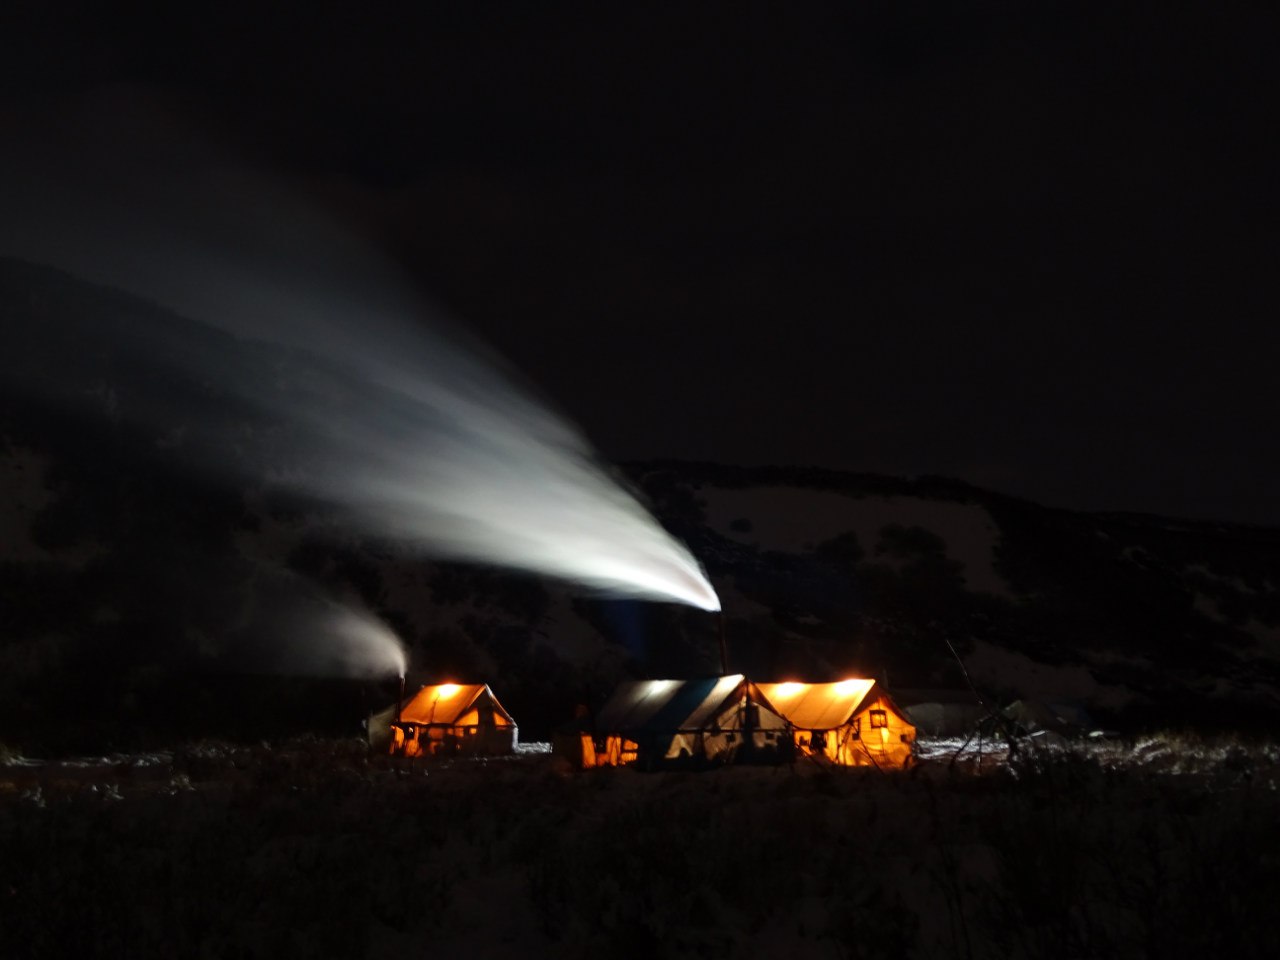 Лагерь в ночи: базовый геологический лагерь в черные ночи поздней осени, когда бескрайние луга присыпает снегом.